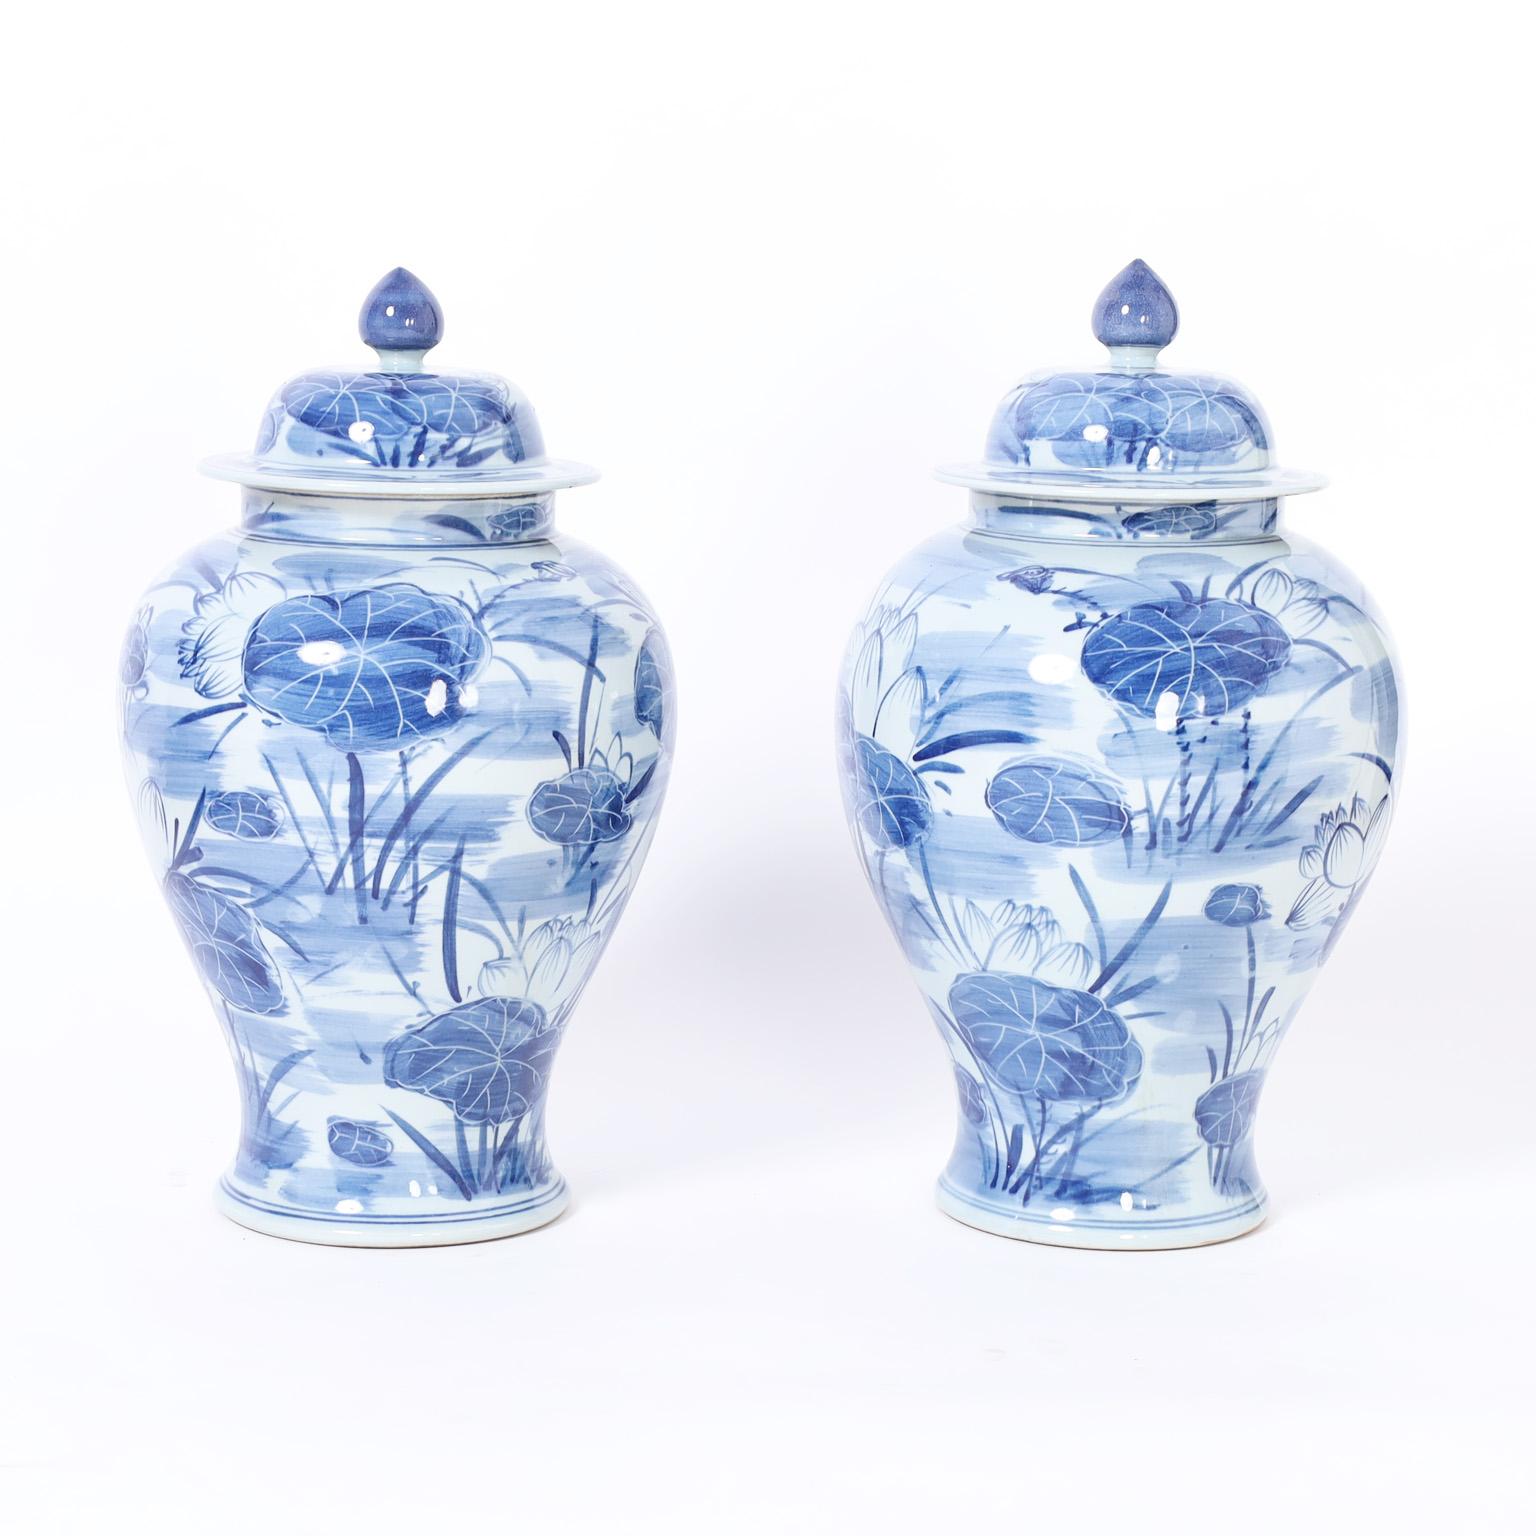 Charmante paire d'urnes chinoises bleu et blanc en porcelaine de forme classique avec couvercles amovibles et décorées à la main de lys et de fleurs.